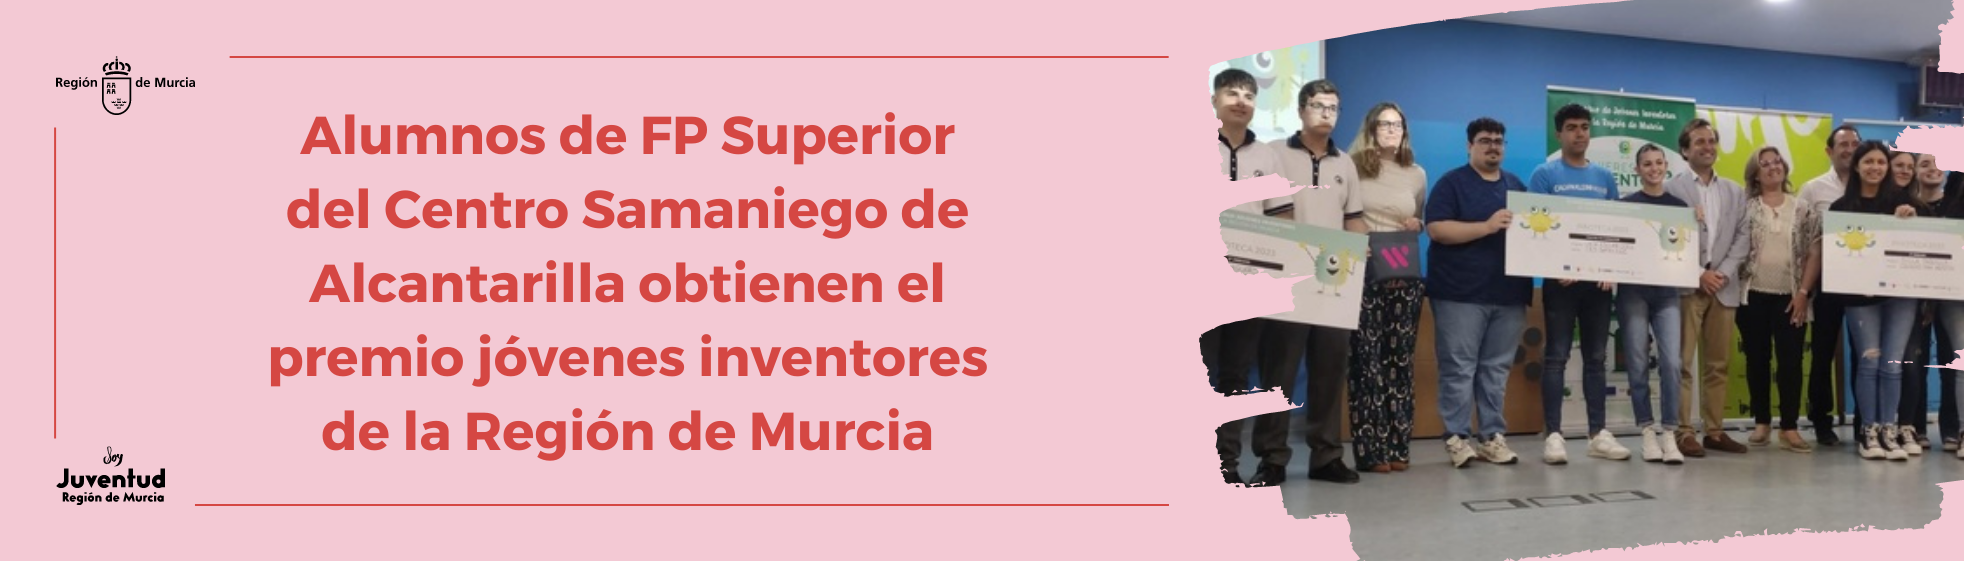 Alumnos de FP Superior del Centro Samaniego de Alcantarilla obtienen el premio jóvenes inventores de la Región